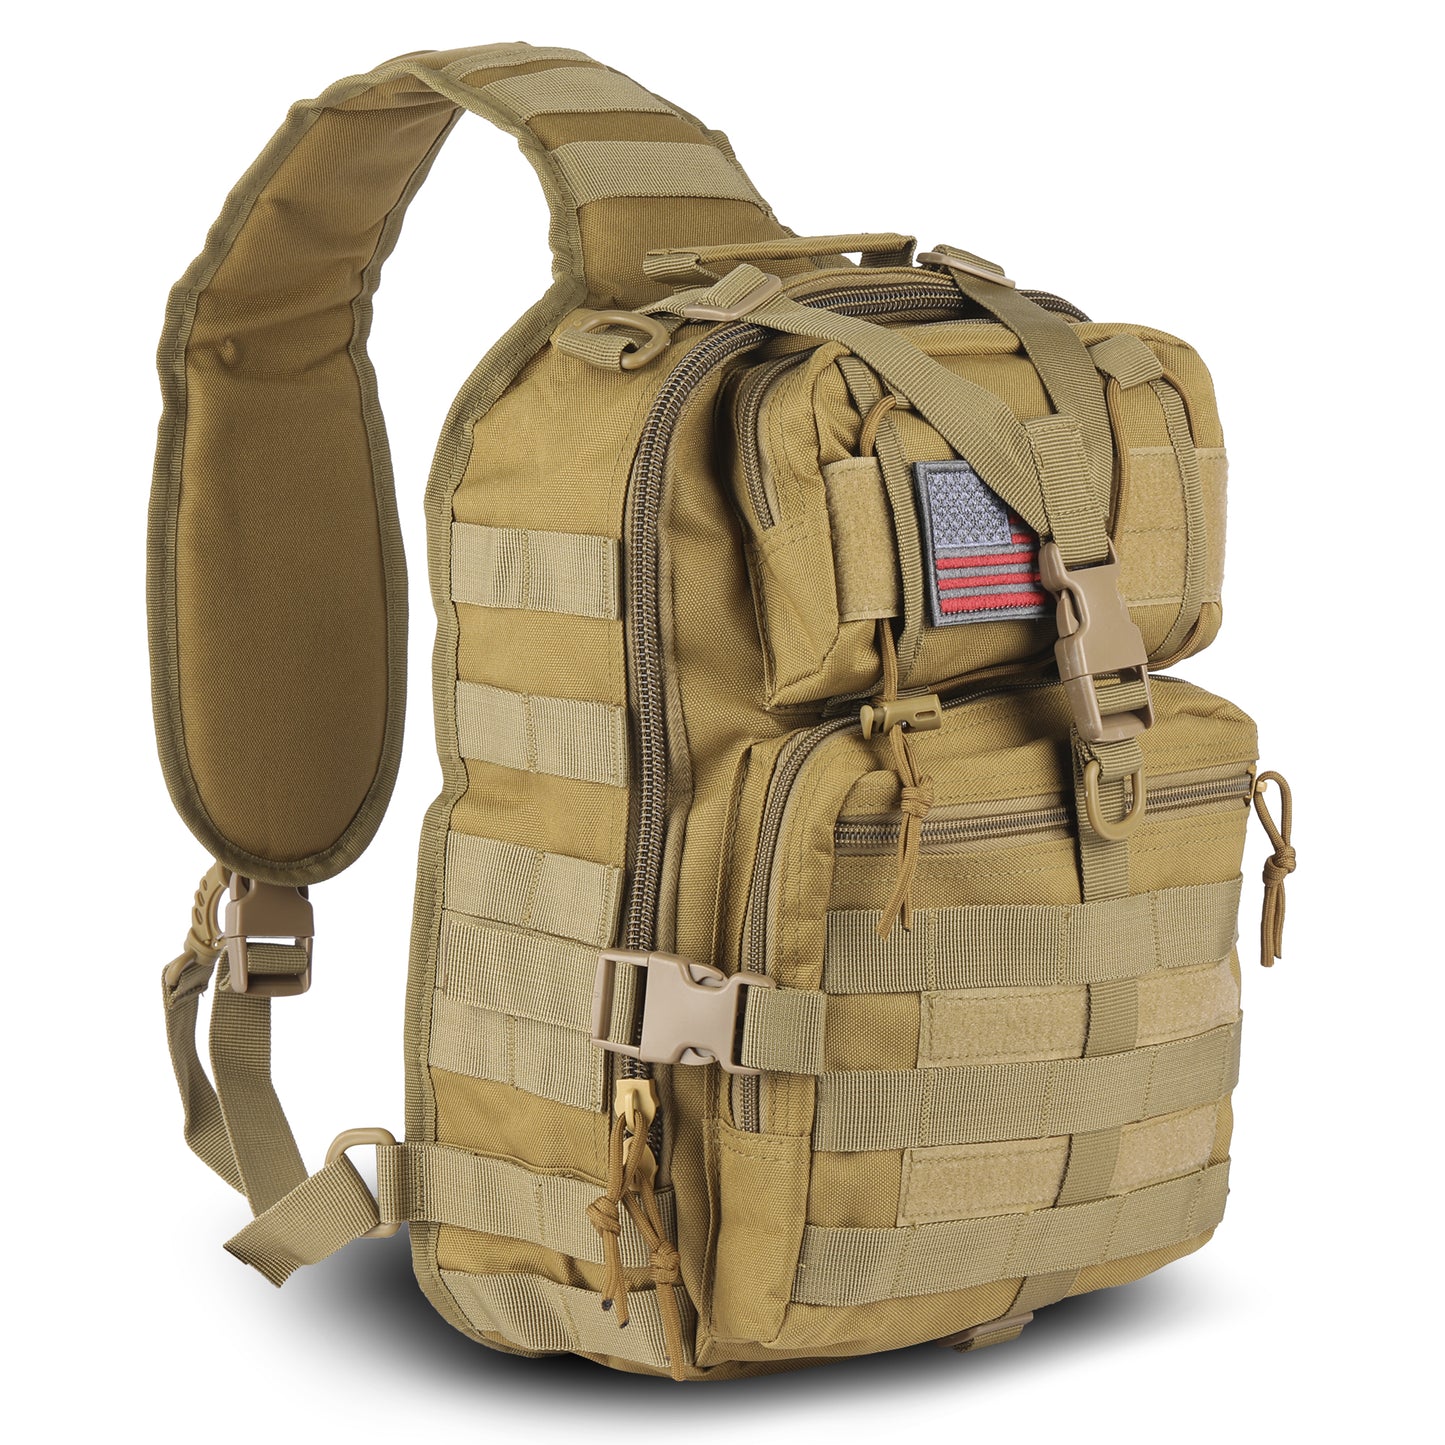 EDC Range Bag - Pistol Sling Bag Backpack (14 Liter)